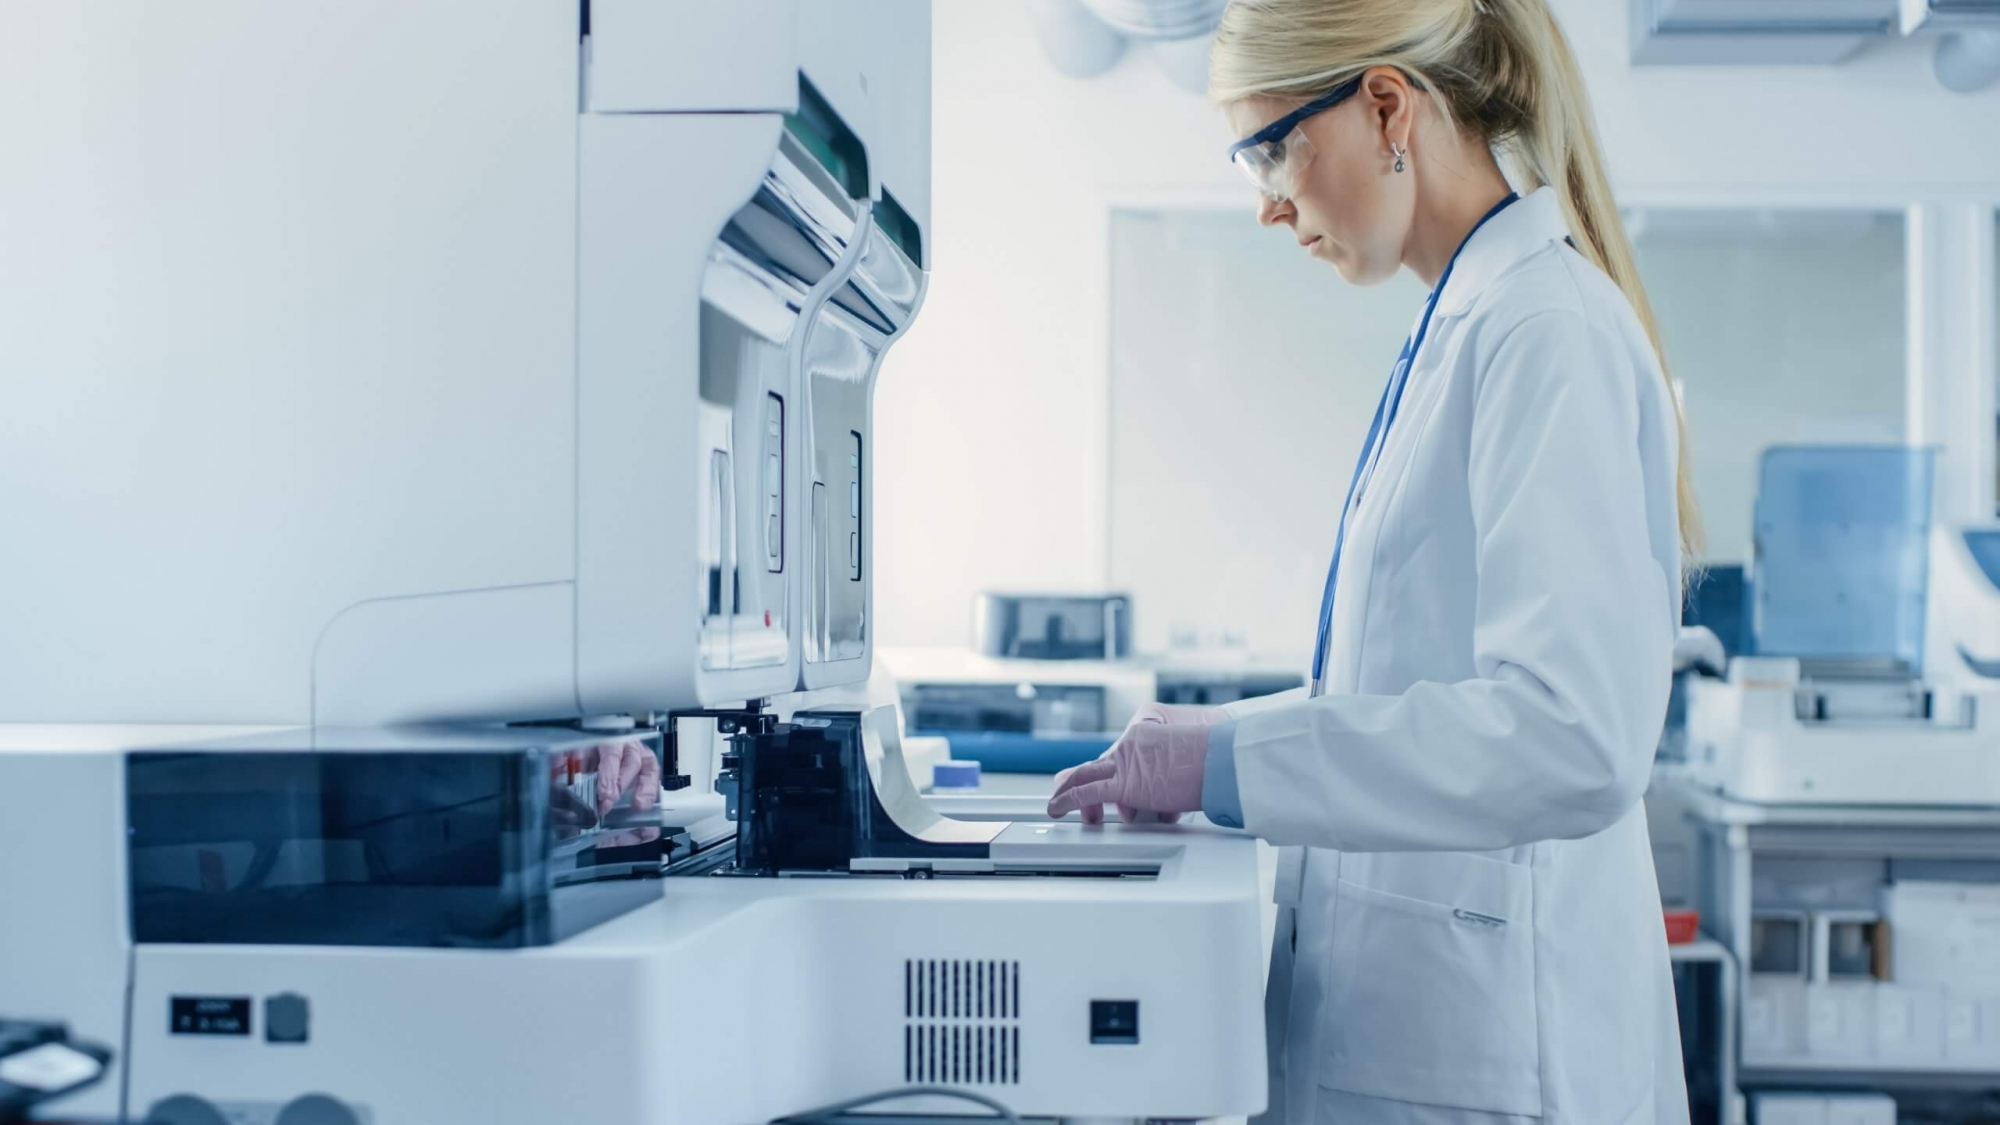 Auf dem Foto ist eine Labormitarbeiterin mit weißem Kittel und Schutzbrille zu sehen. Sie bedient ein hochmodernes Laborgerät.